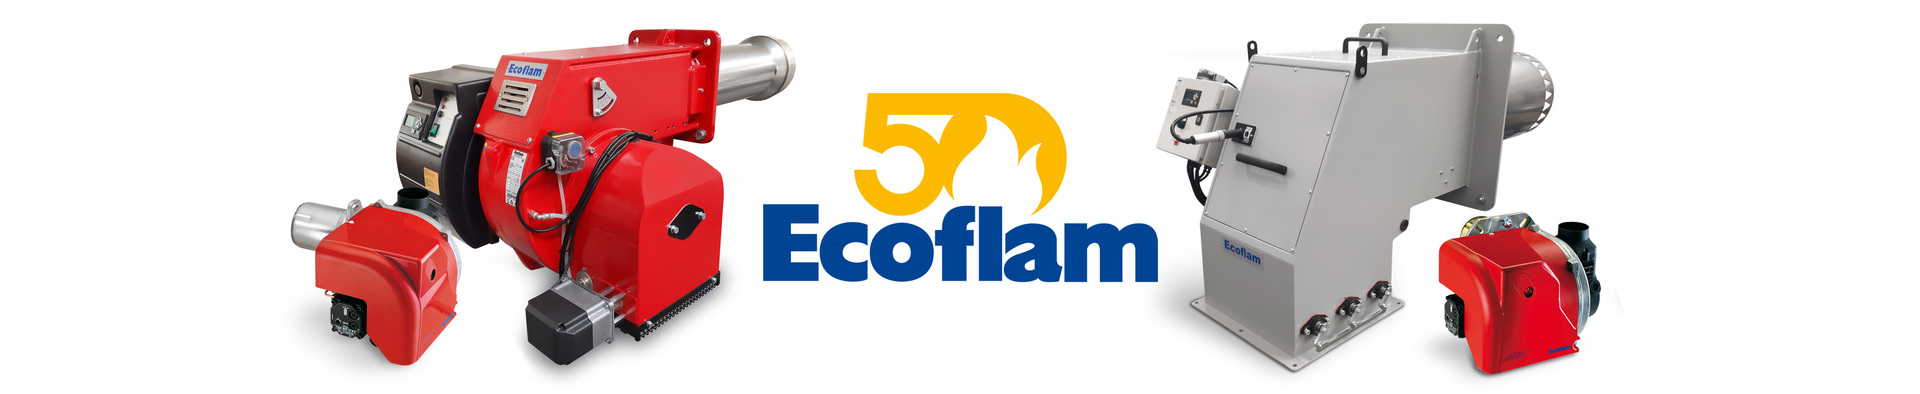 Ecoflam range50